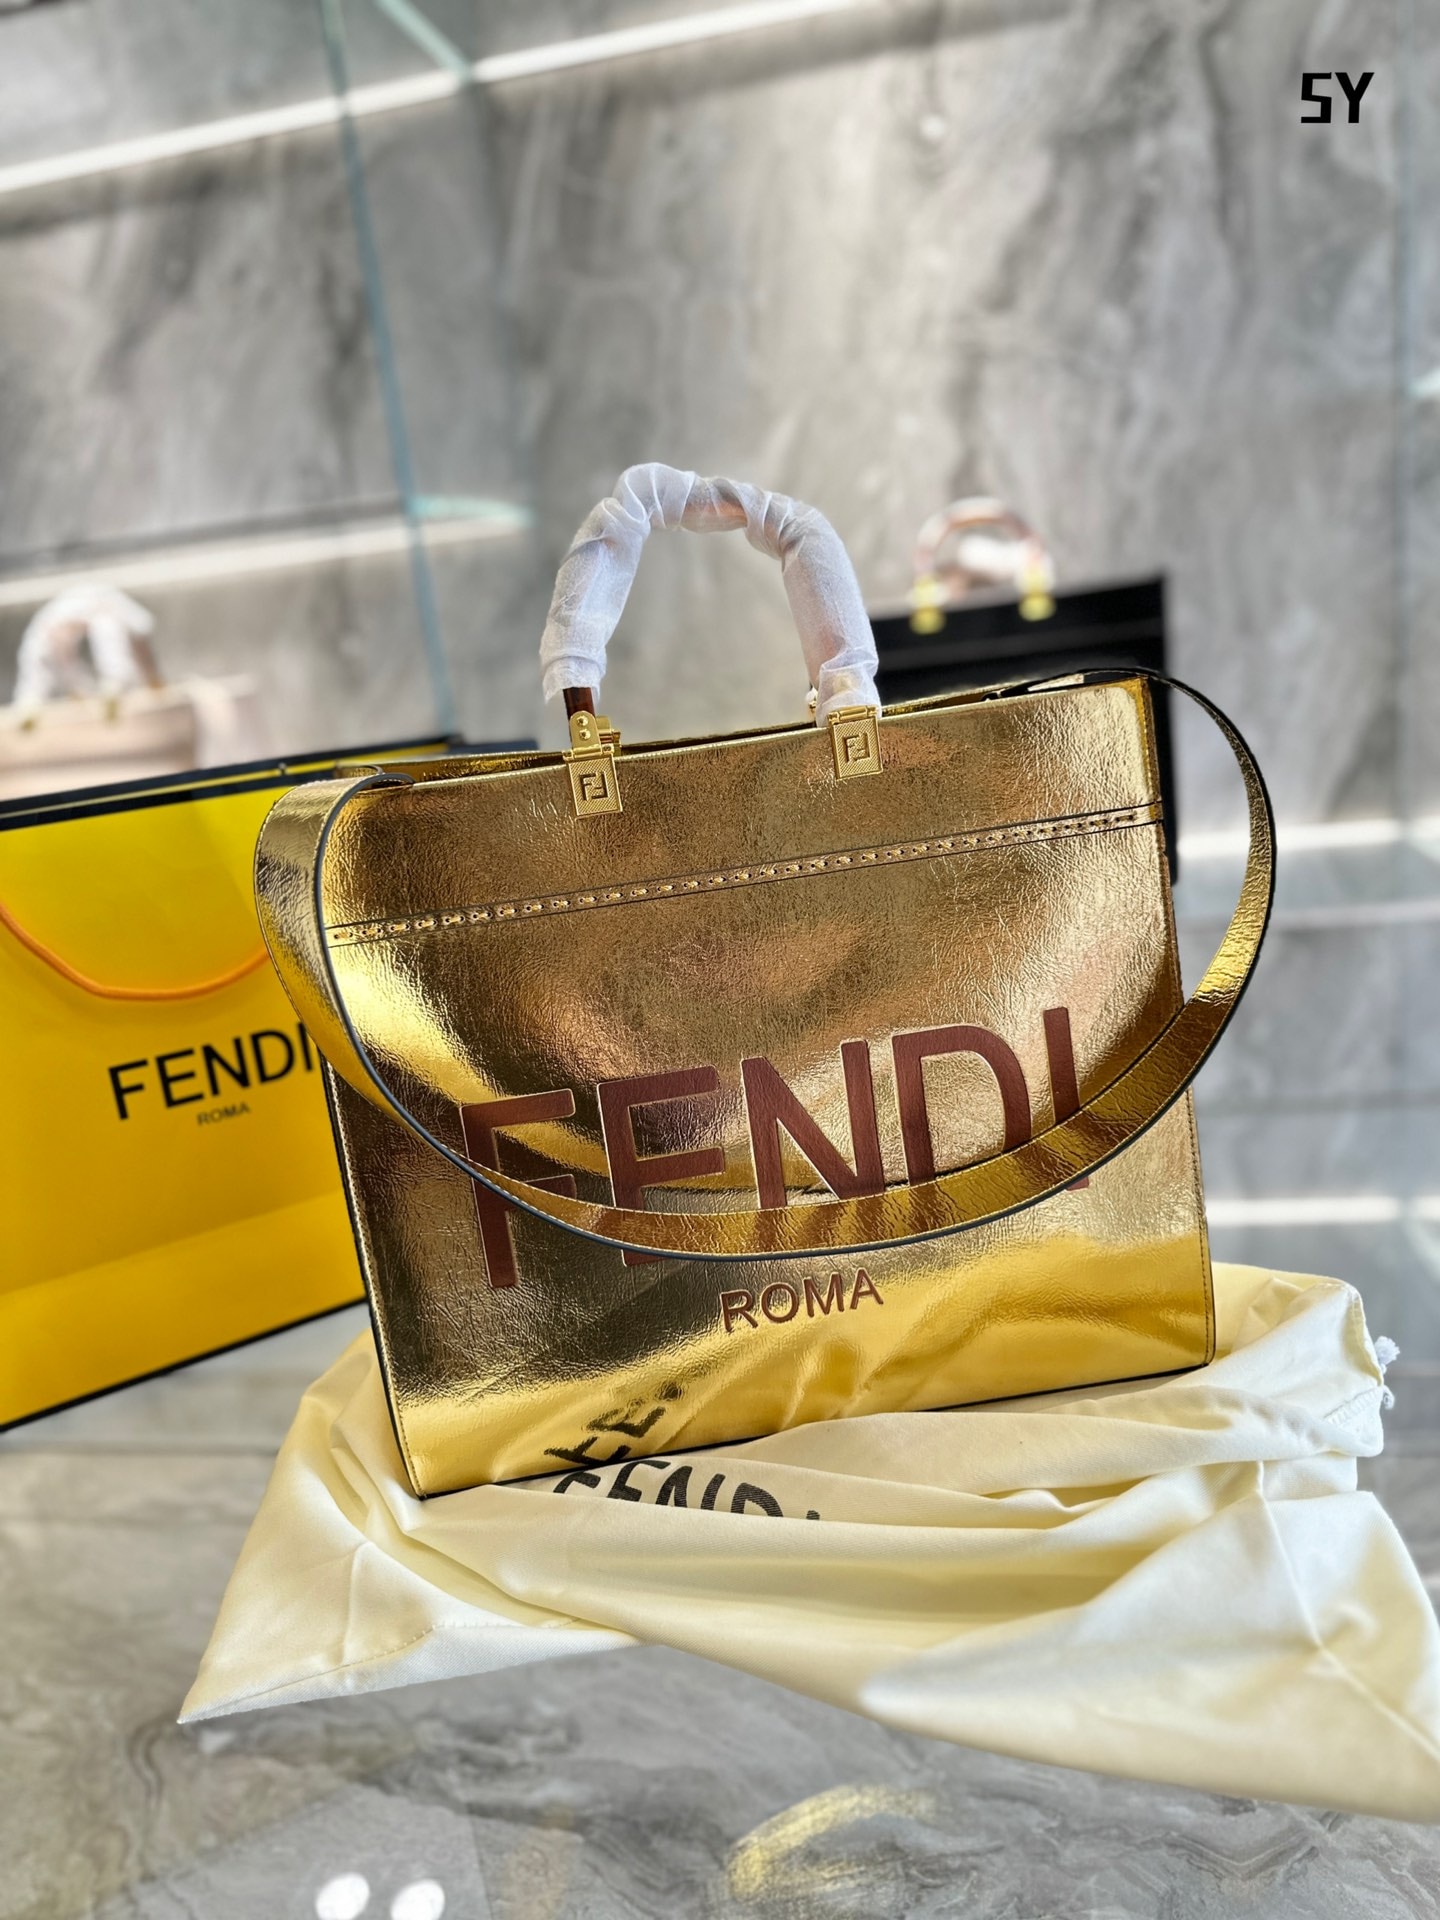 FENDI SUNSHINE METALLIC SHOPPER TOTE BAG GOLD 41CM – Emlina